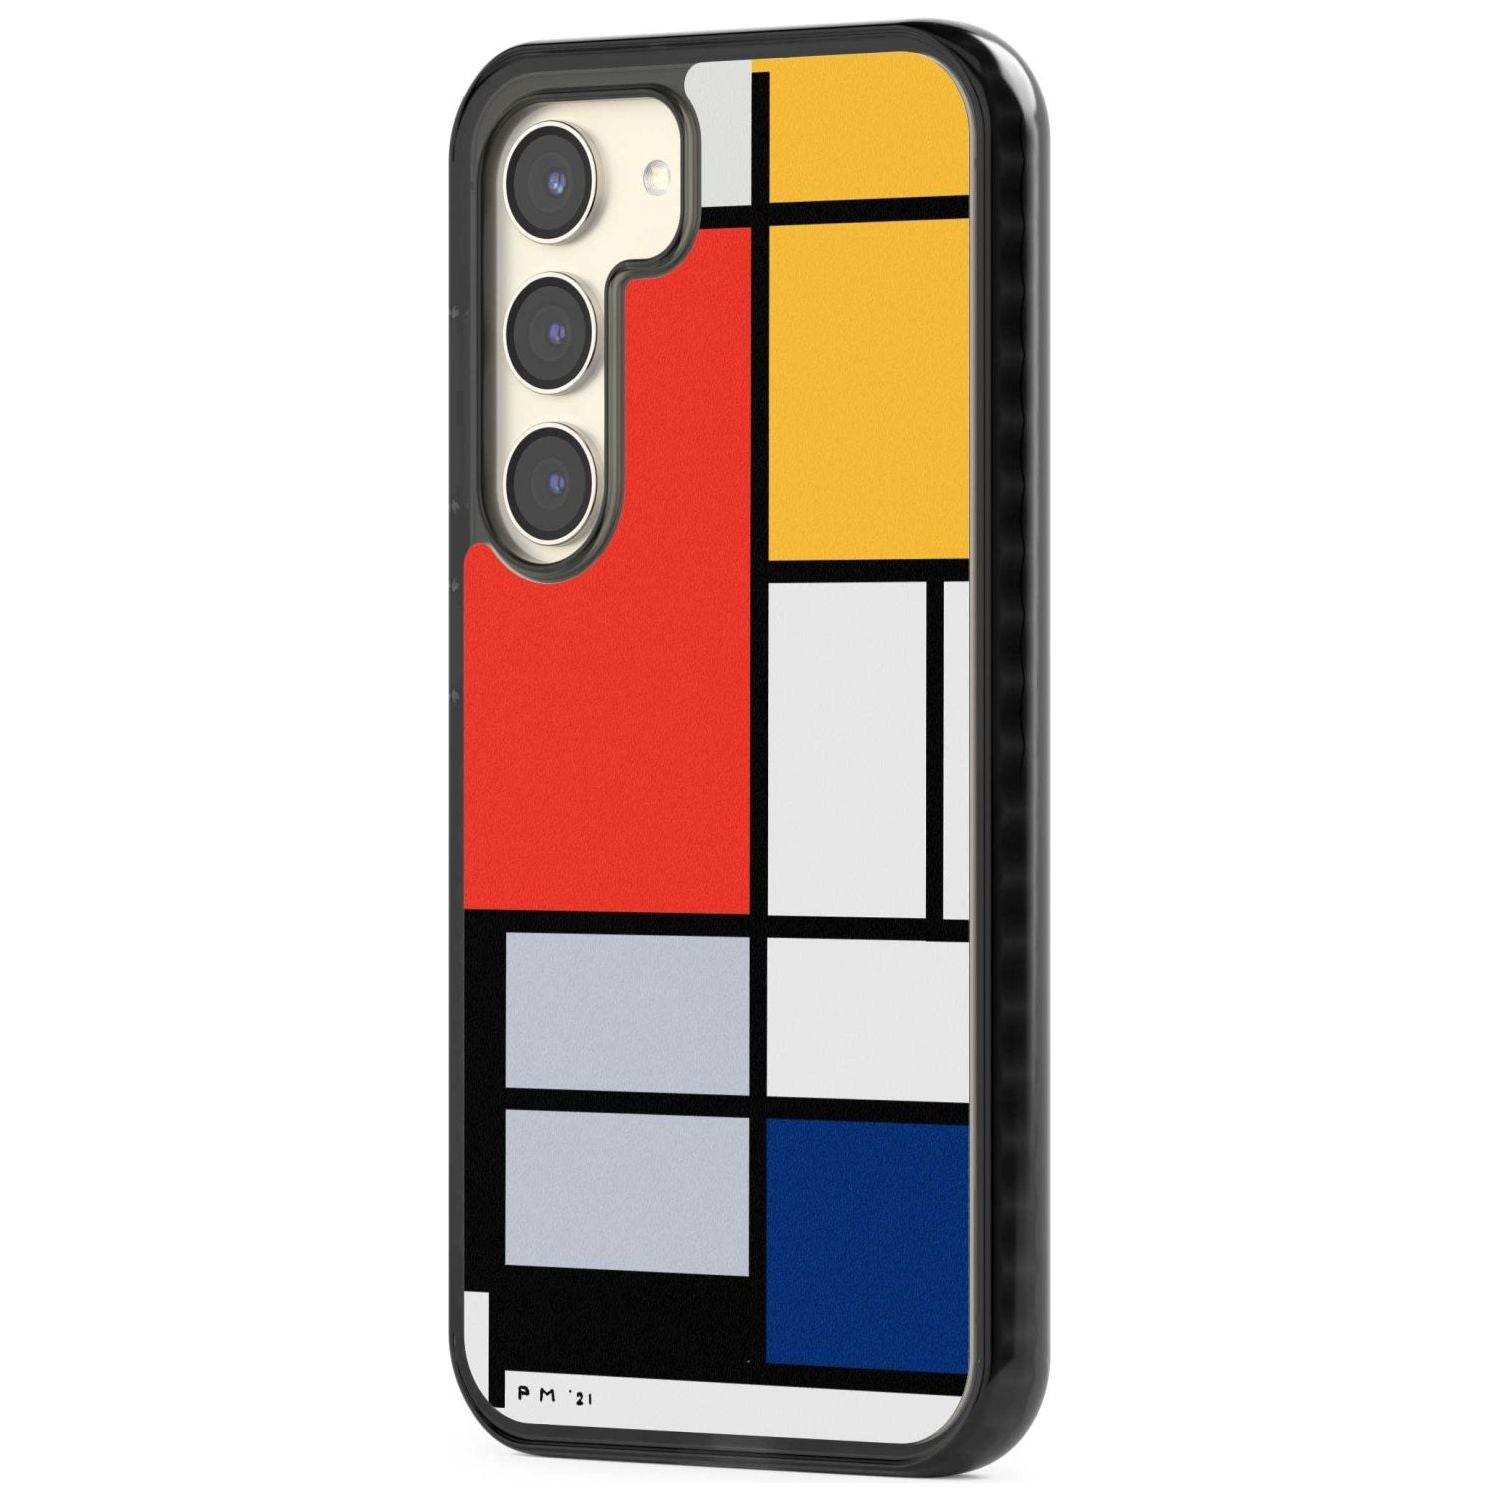 Piet Mondrian's Composition